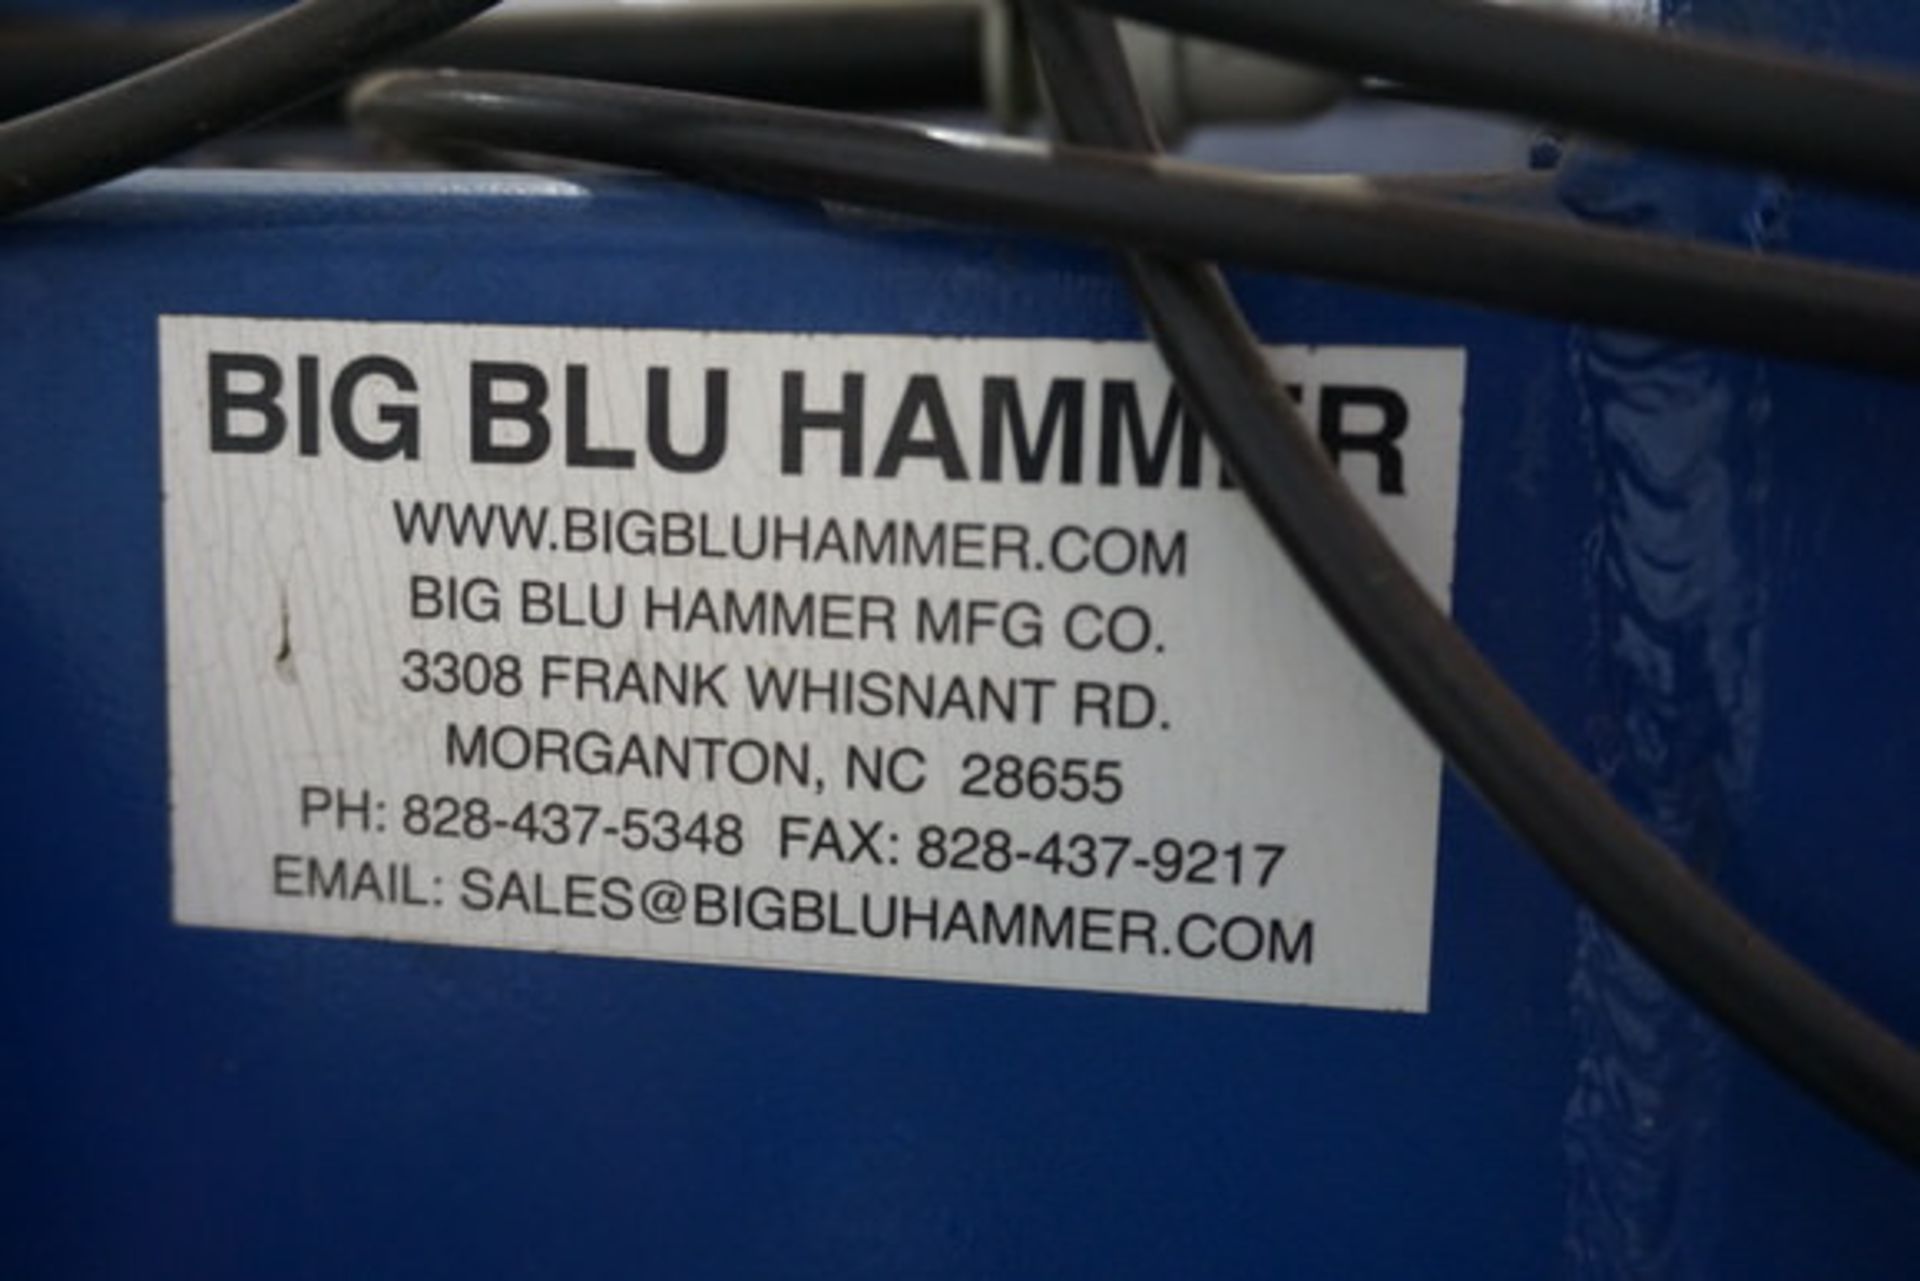 Big Blu 155 Max Hydraulic Hammer, 10" Stroke, 155 lb Ram, Foot Control (LOCATION: ROME, TX) - Image 2 of 11